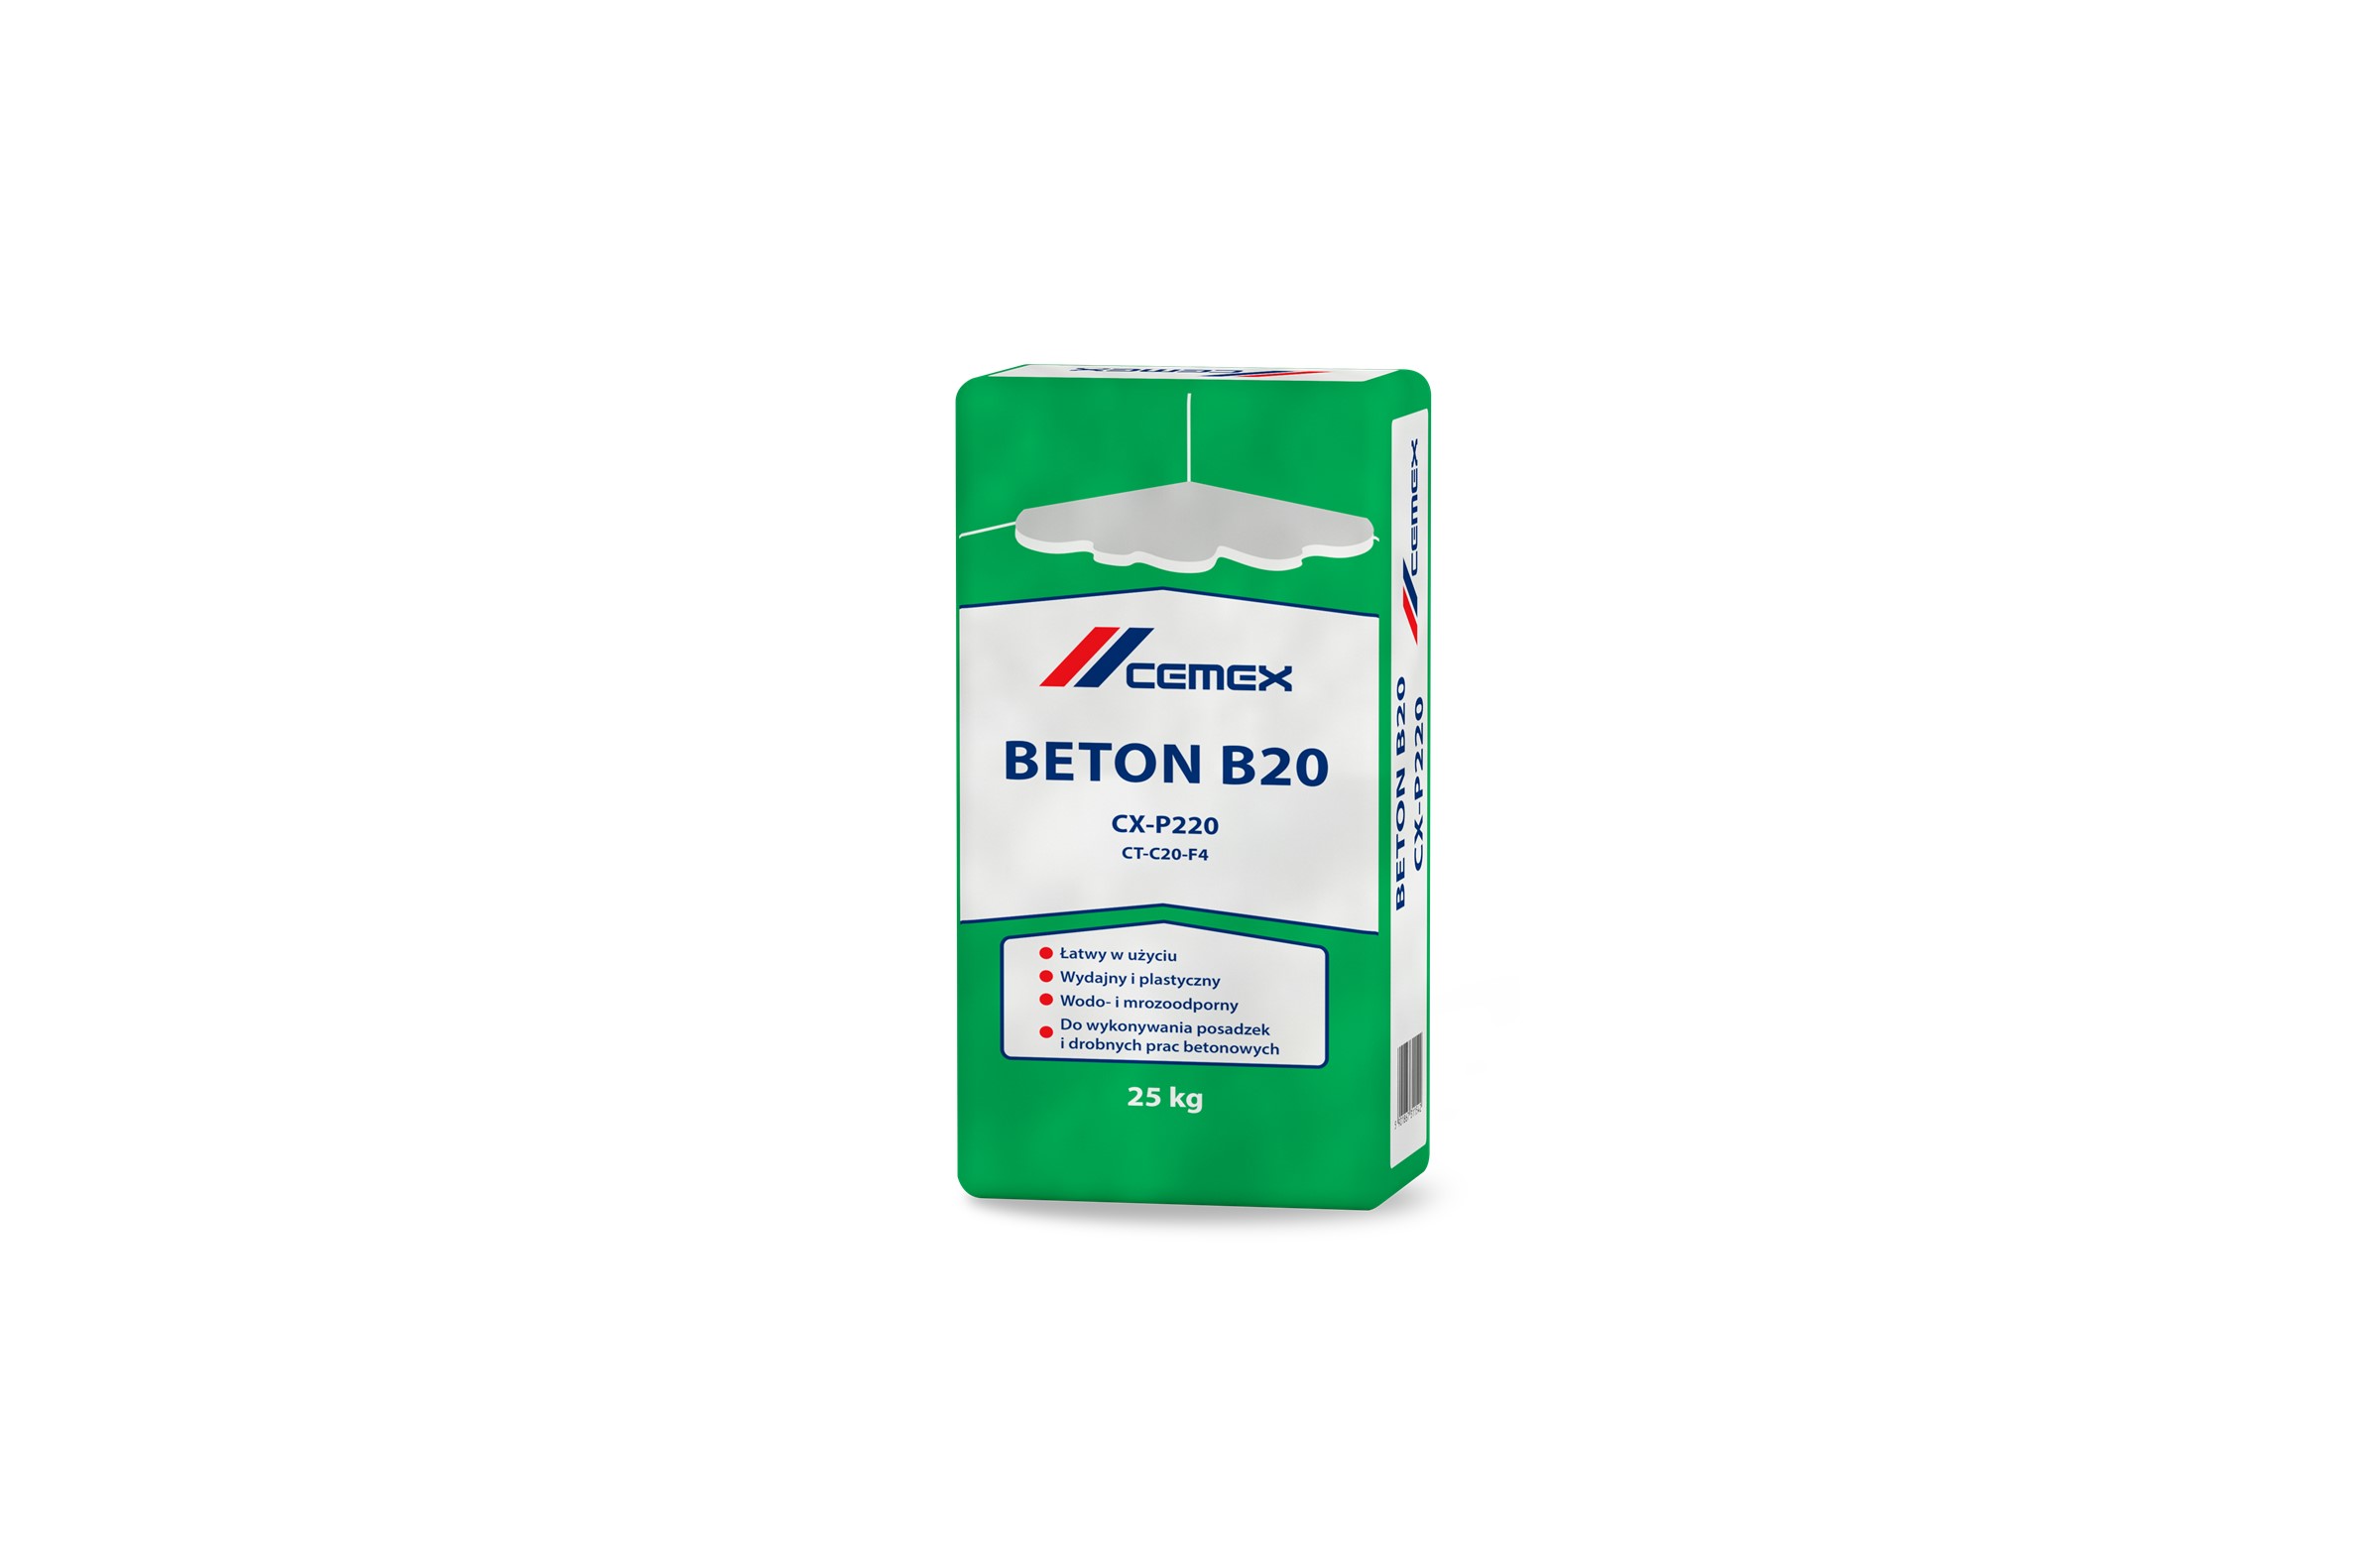 NOWY PRODUKT W OFERCIE CEMEX – BETON B20